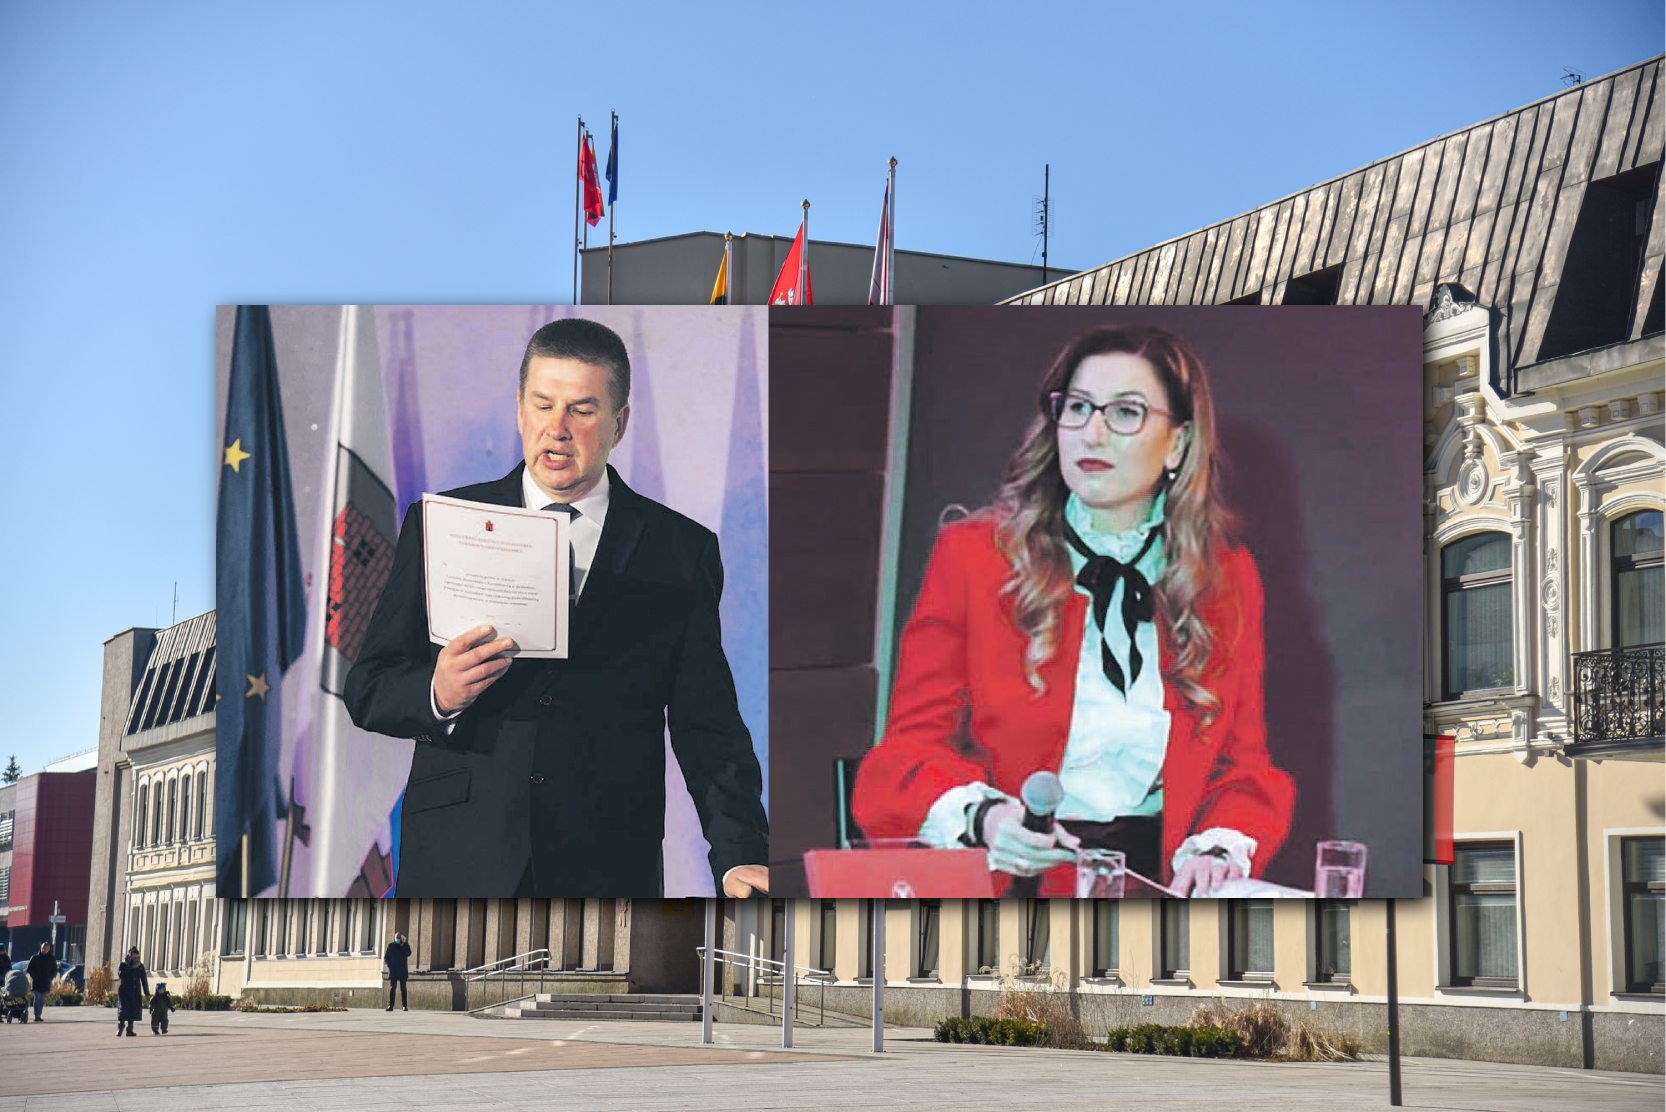 Jau ir oficialiai įregistruota Sauliaus Skvernelio vedama demokratų sąjunga „Vardan Lietuvos“ pradeda dėlioti kortas regionuose.